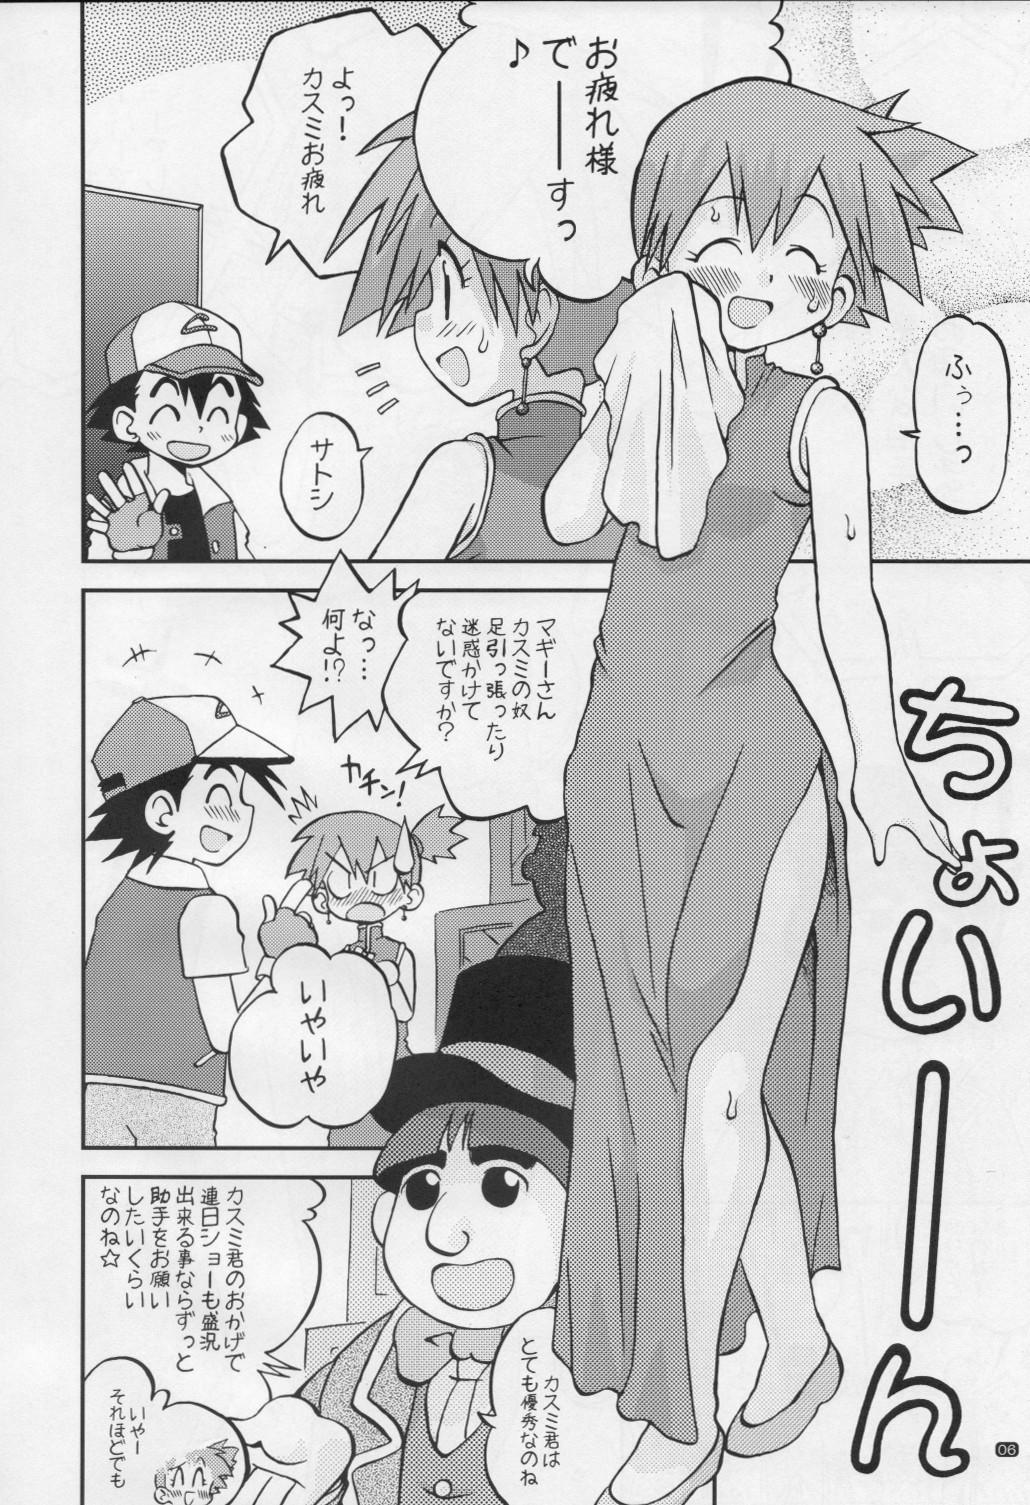 Hetero Yume no Tsubomi wa Tsubomi no Mama dakedo - Pokemon Sexy - Page 5